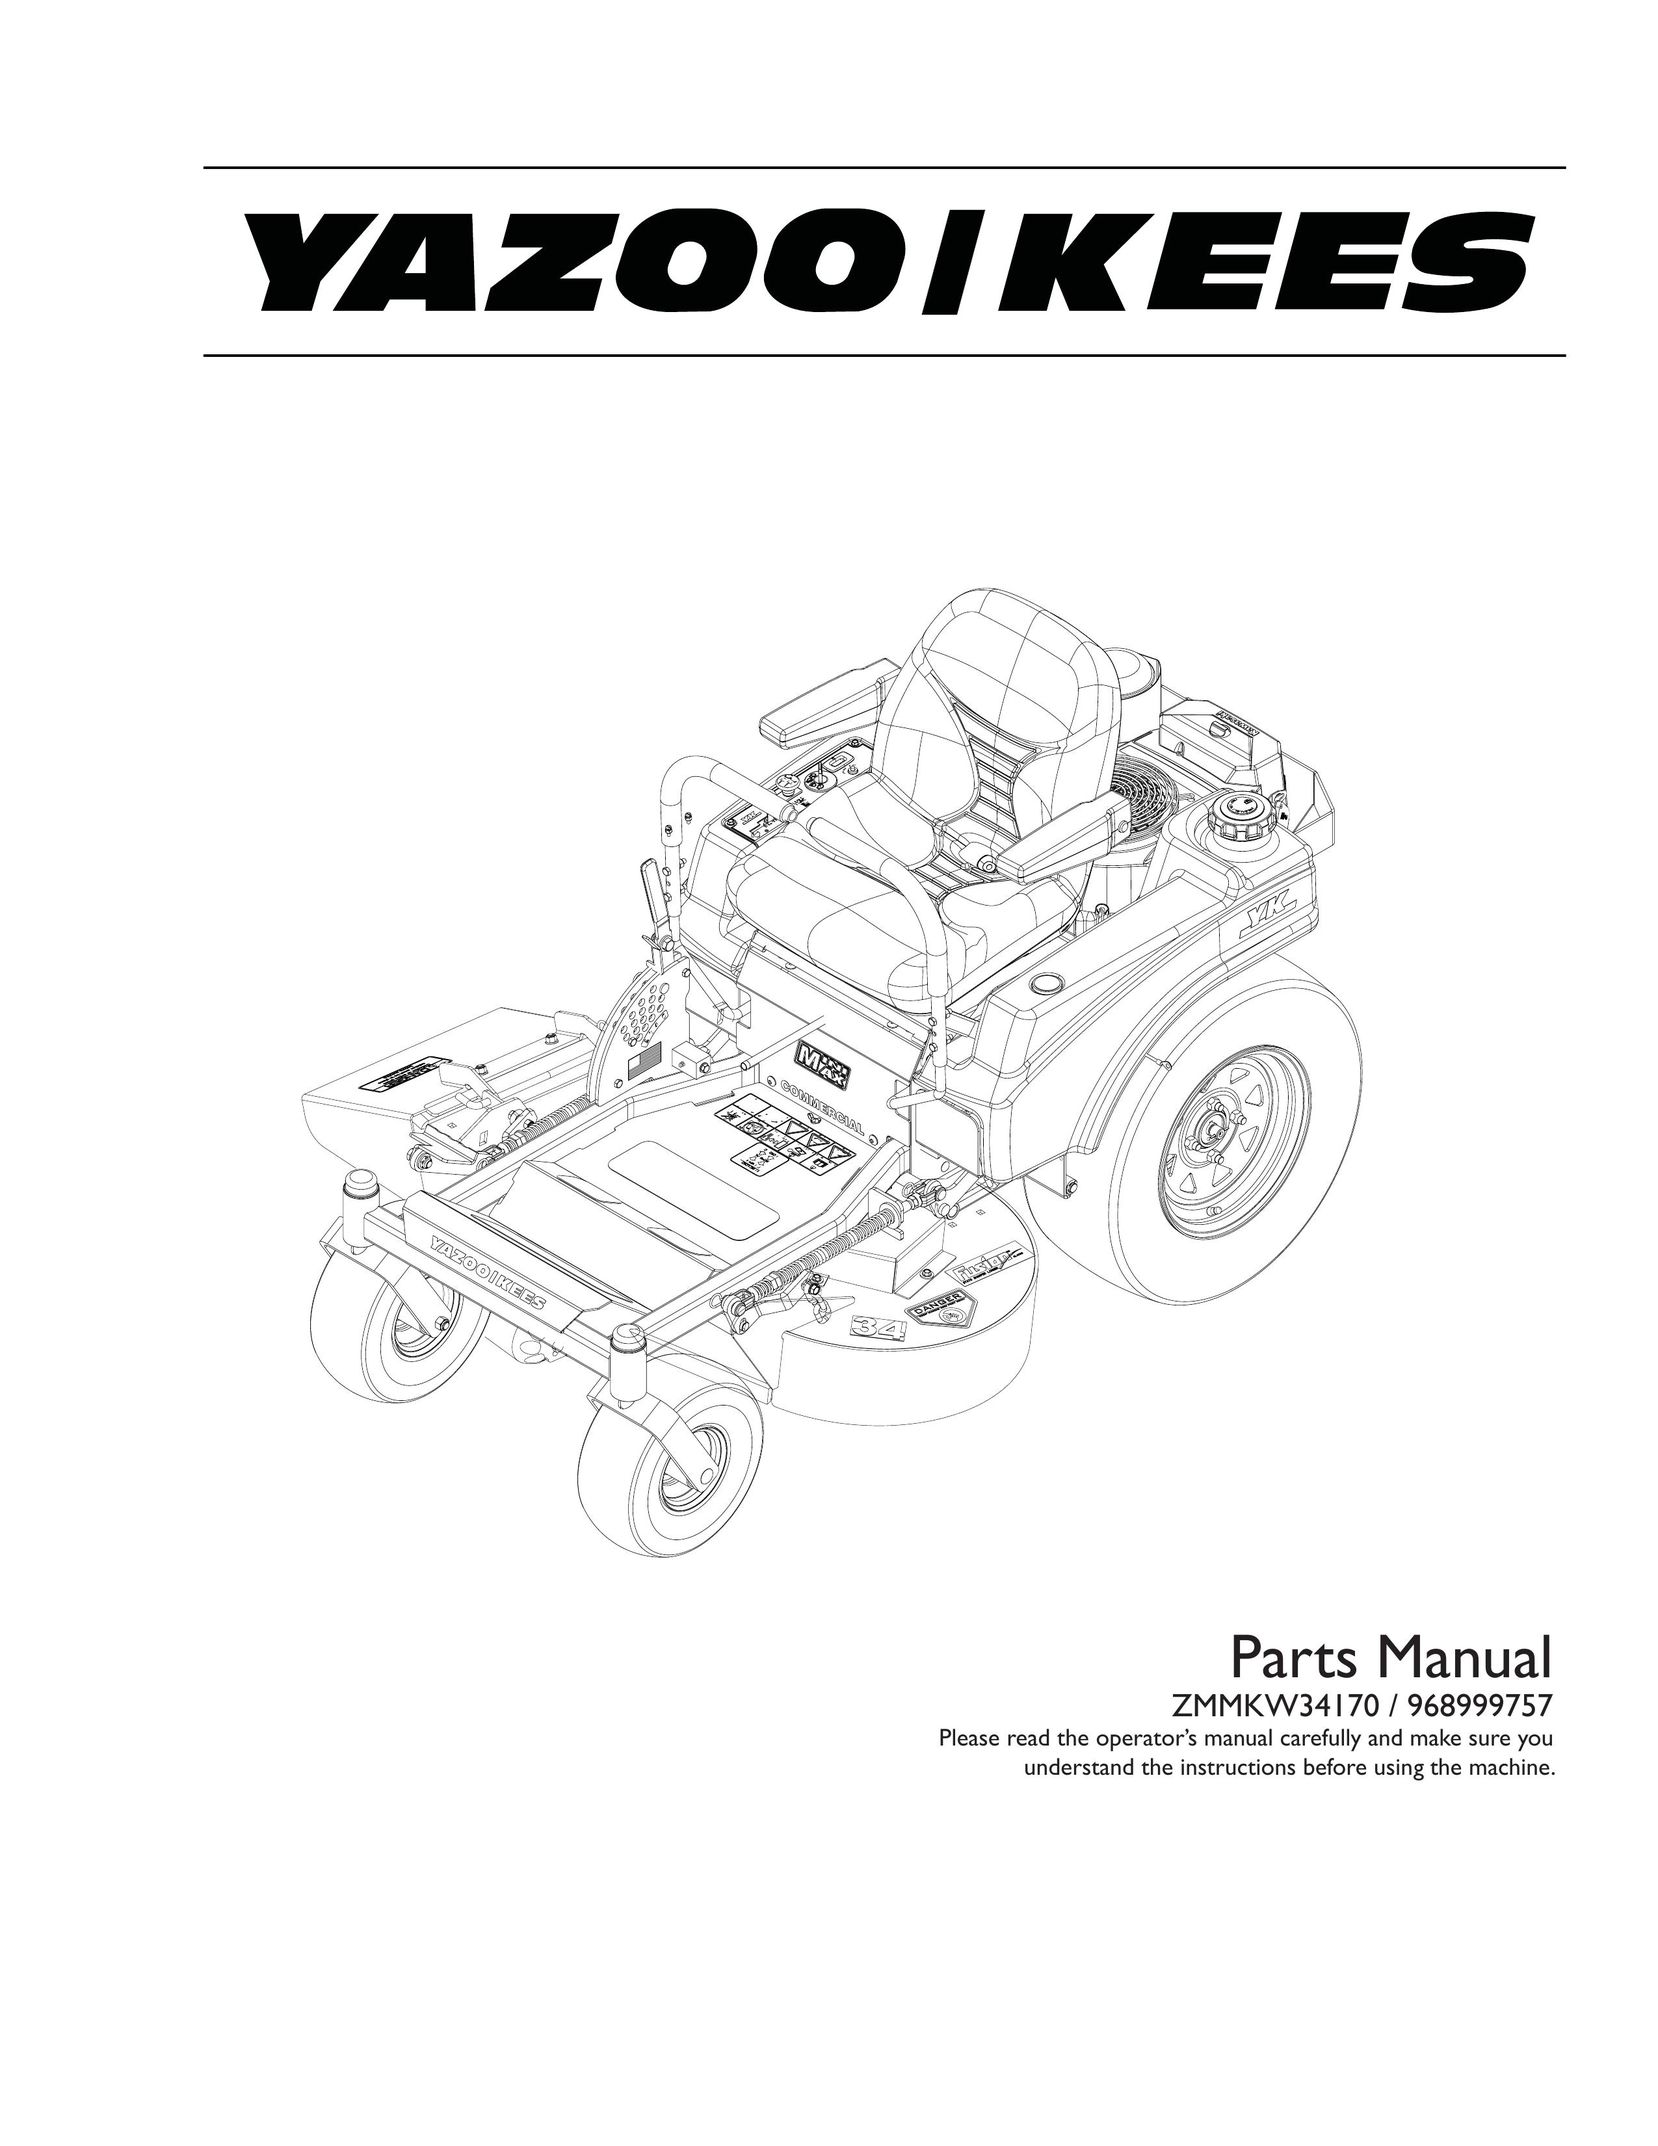 Yazoo/Kees 968999757 Power Supply User Manual